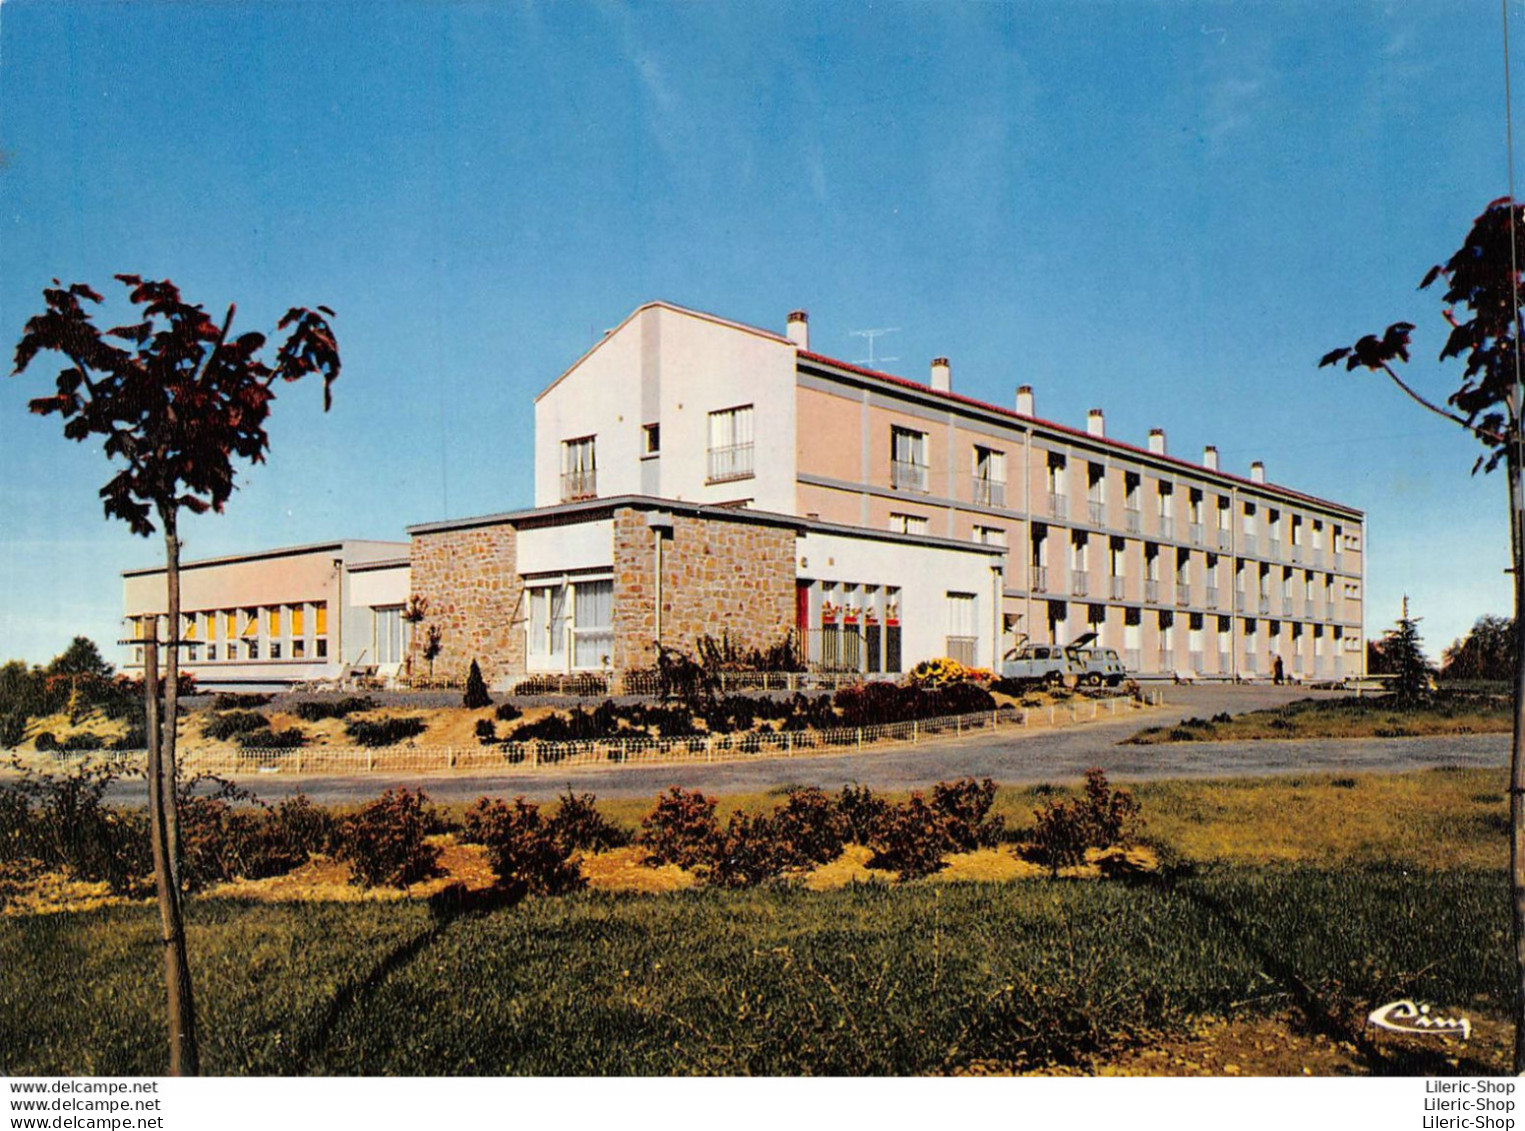 CHÂLUS (87) CPSM ±1970 - La Maison De Retraite - Architecte : M. PORTEJOIE - Éd. COMBIER - - Chalus